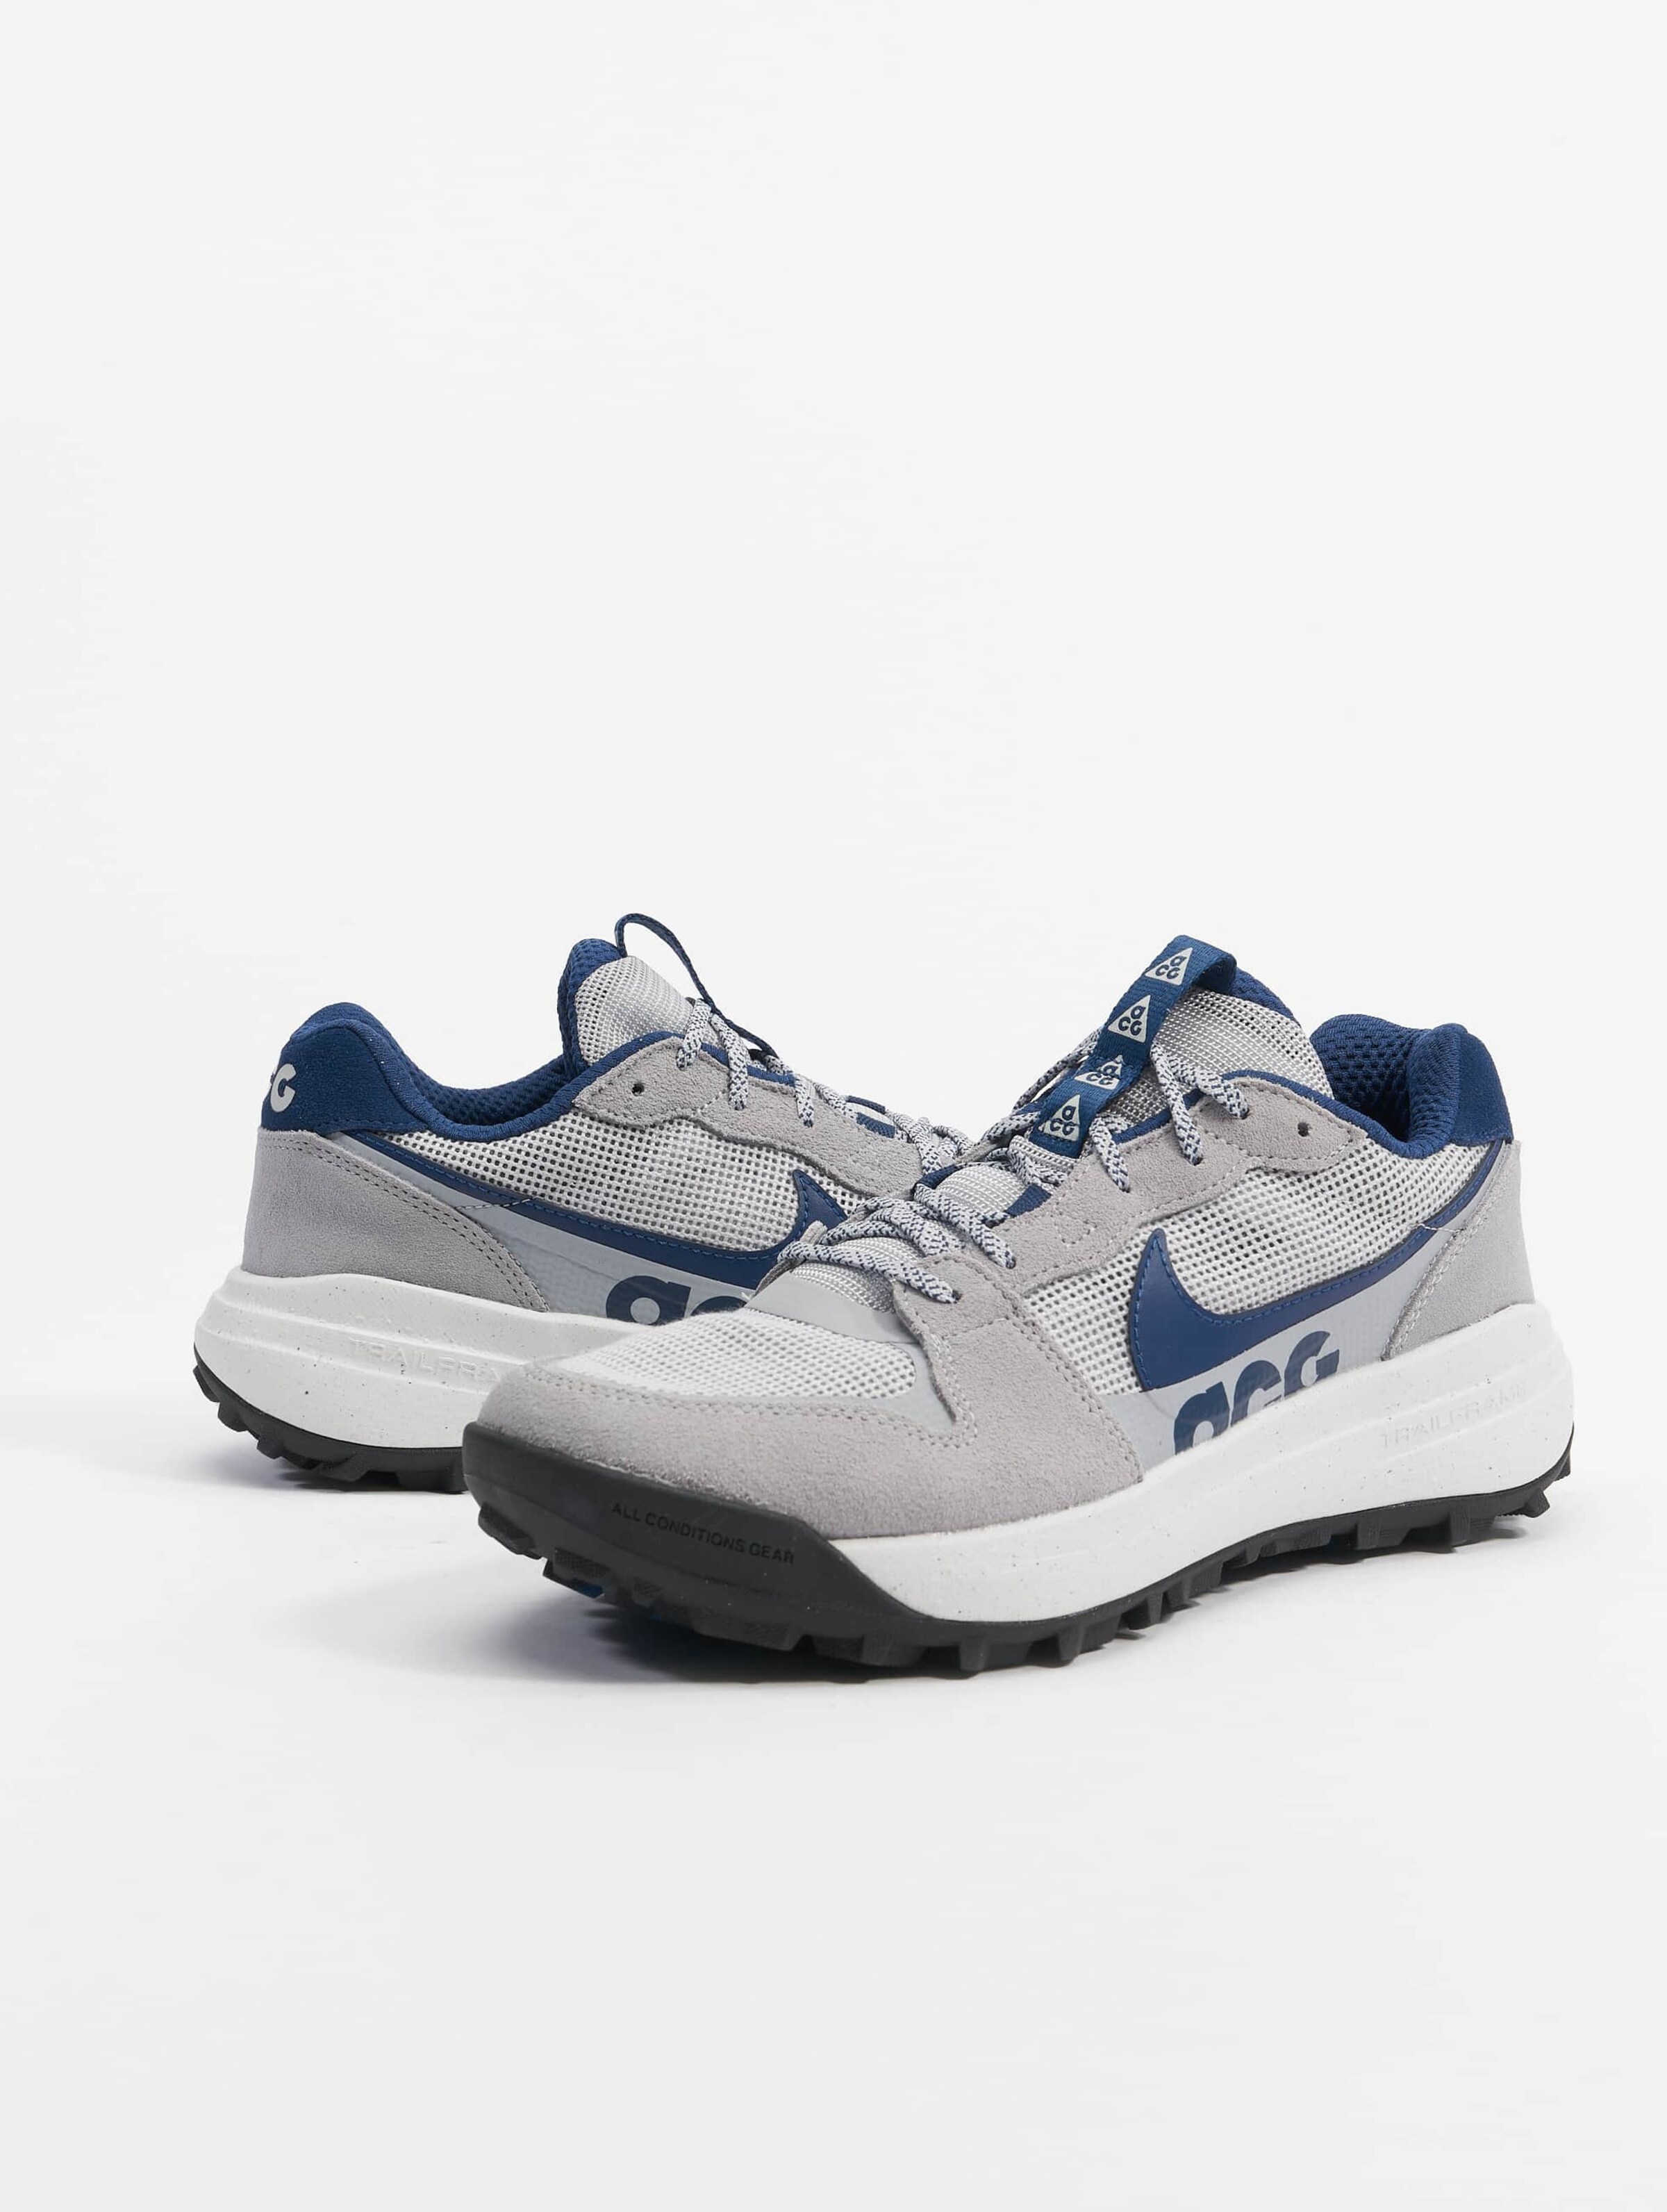 Nike Acg Lowcate Sneakers Wolf Grey/Navygrey Fog/ Summit